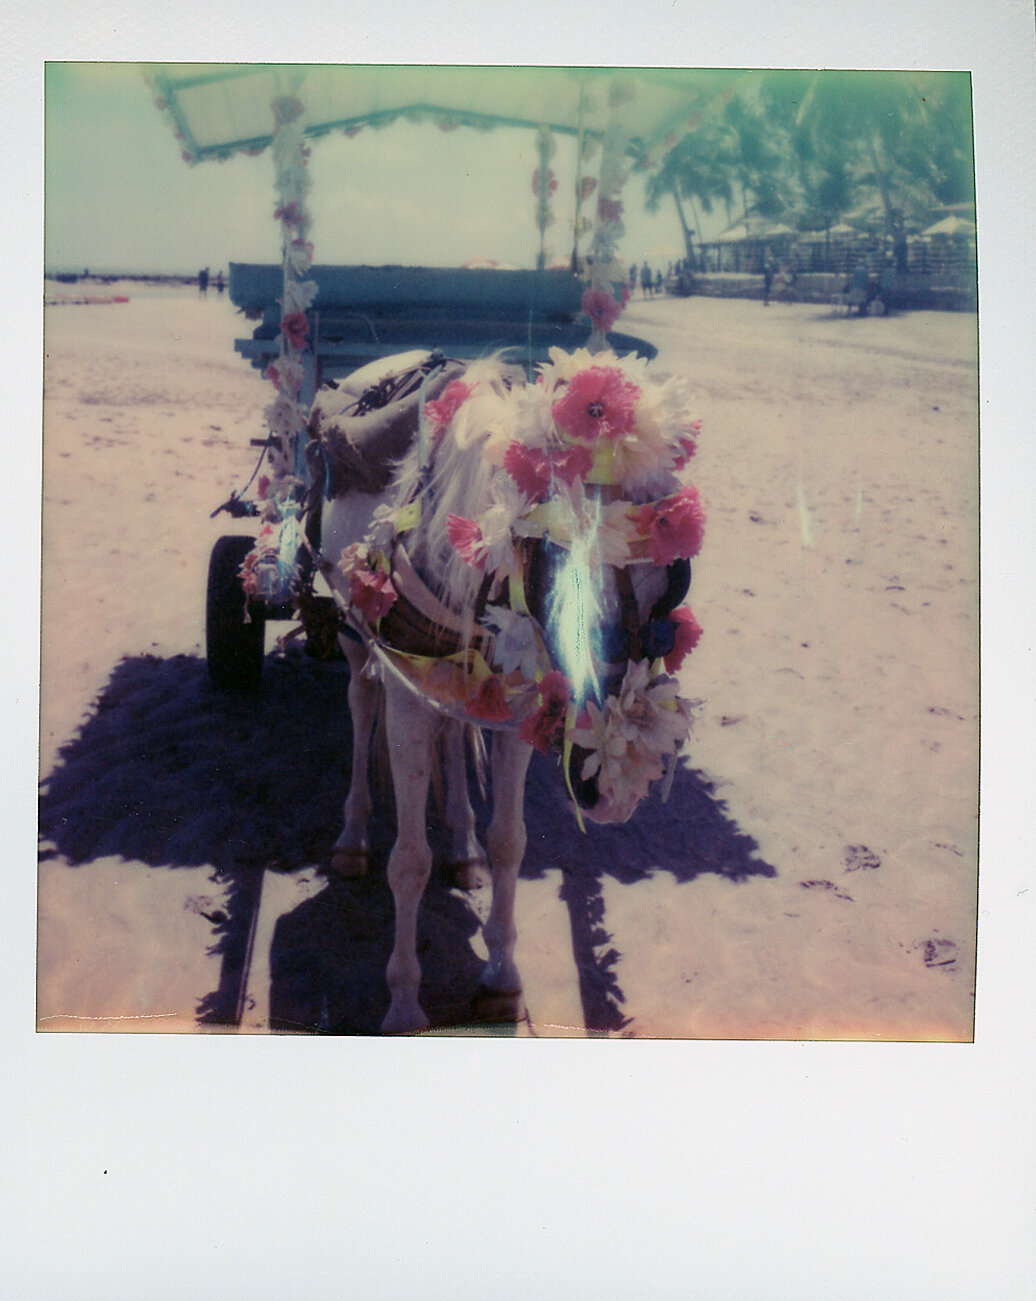 Donkey in Bahia